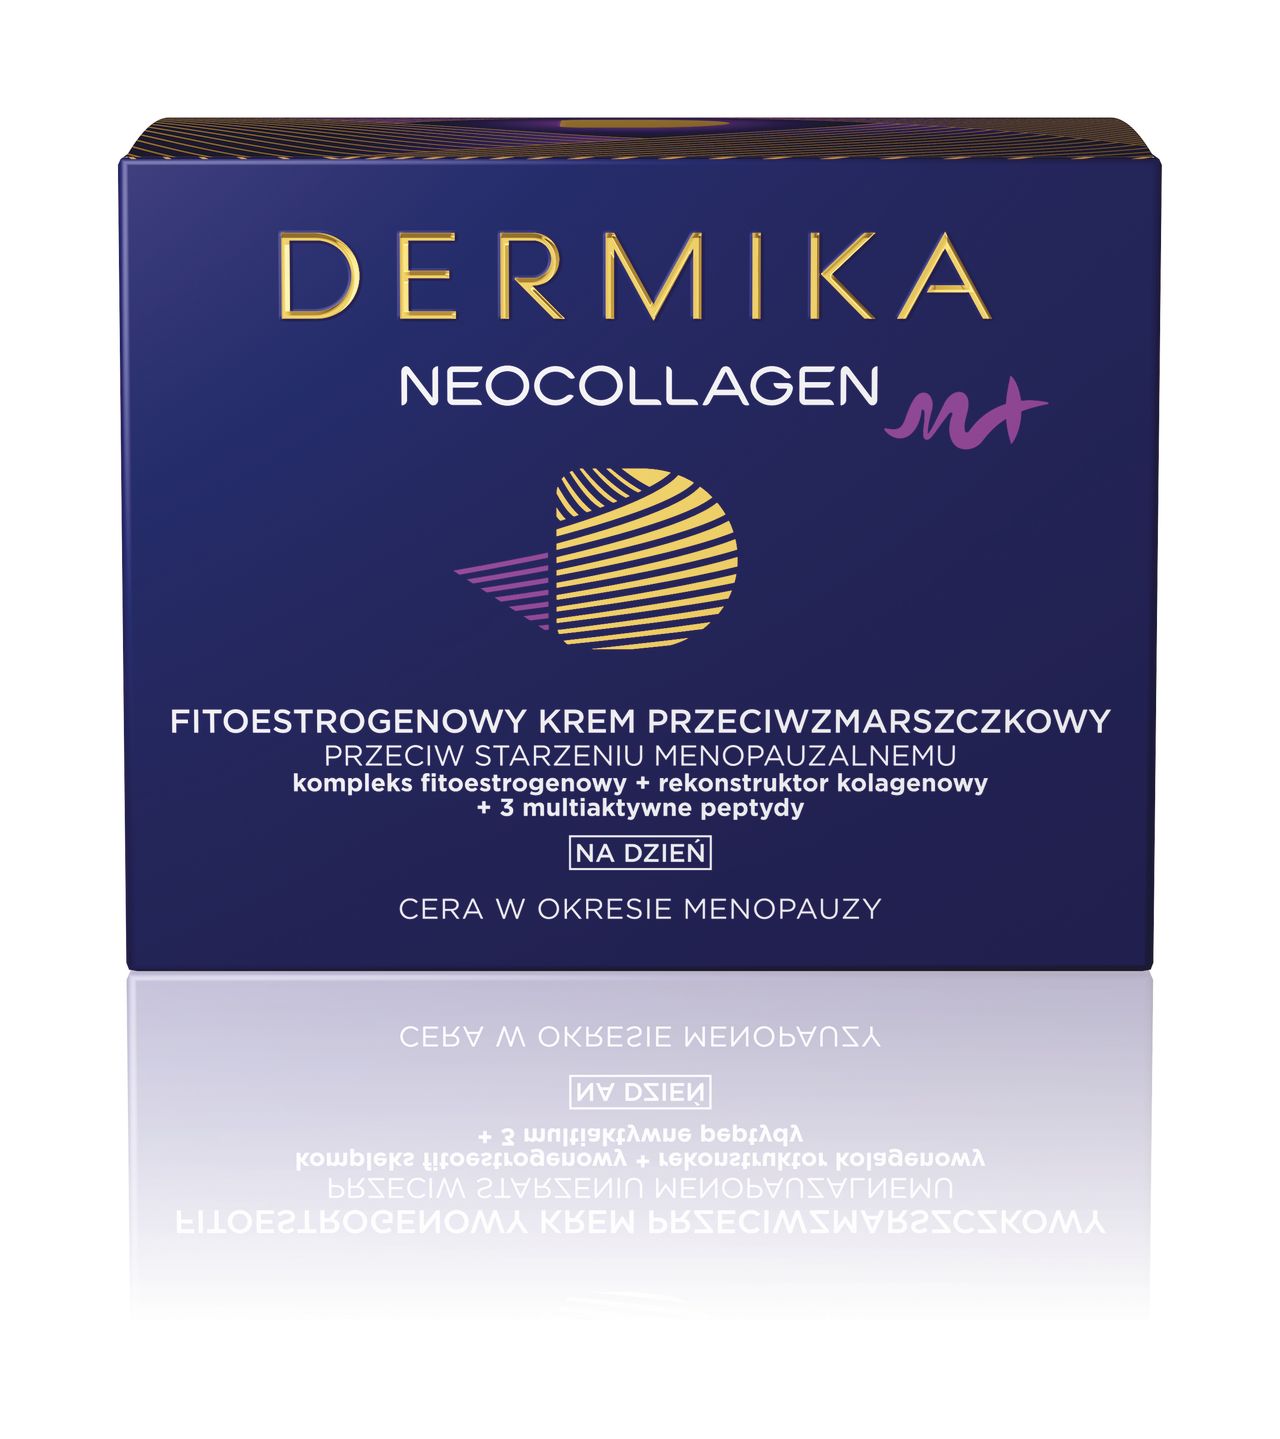 Dermika NEOCOLLAGEN - kompletny program pielęgnacji dostosowany do potrzeb cery dojrzałej oraz cery w okresie menopauzy